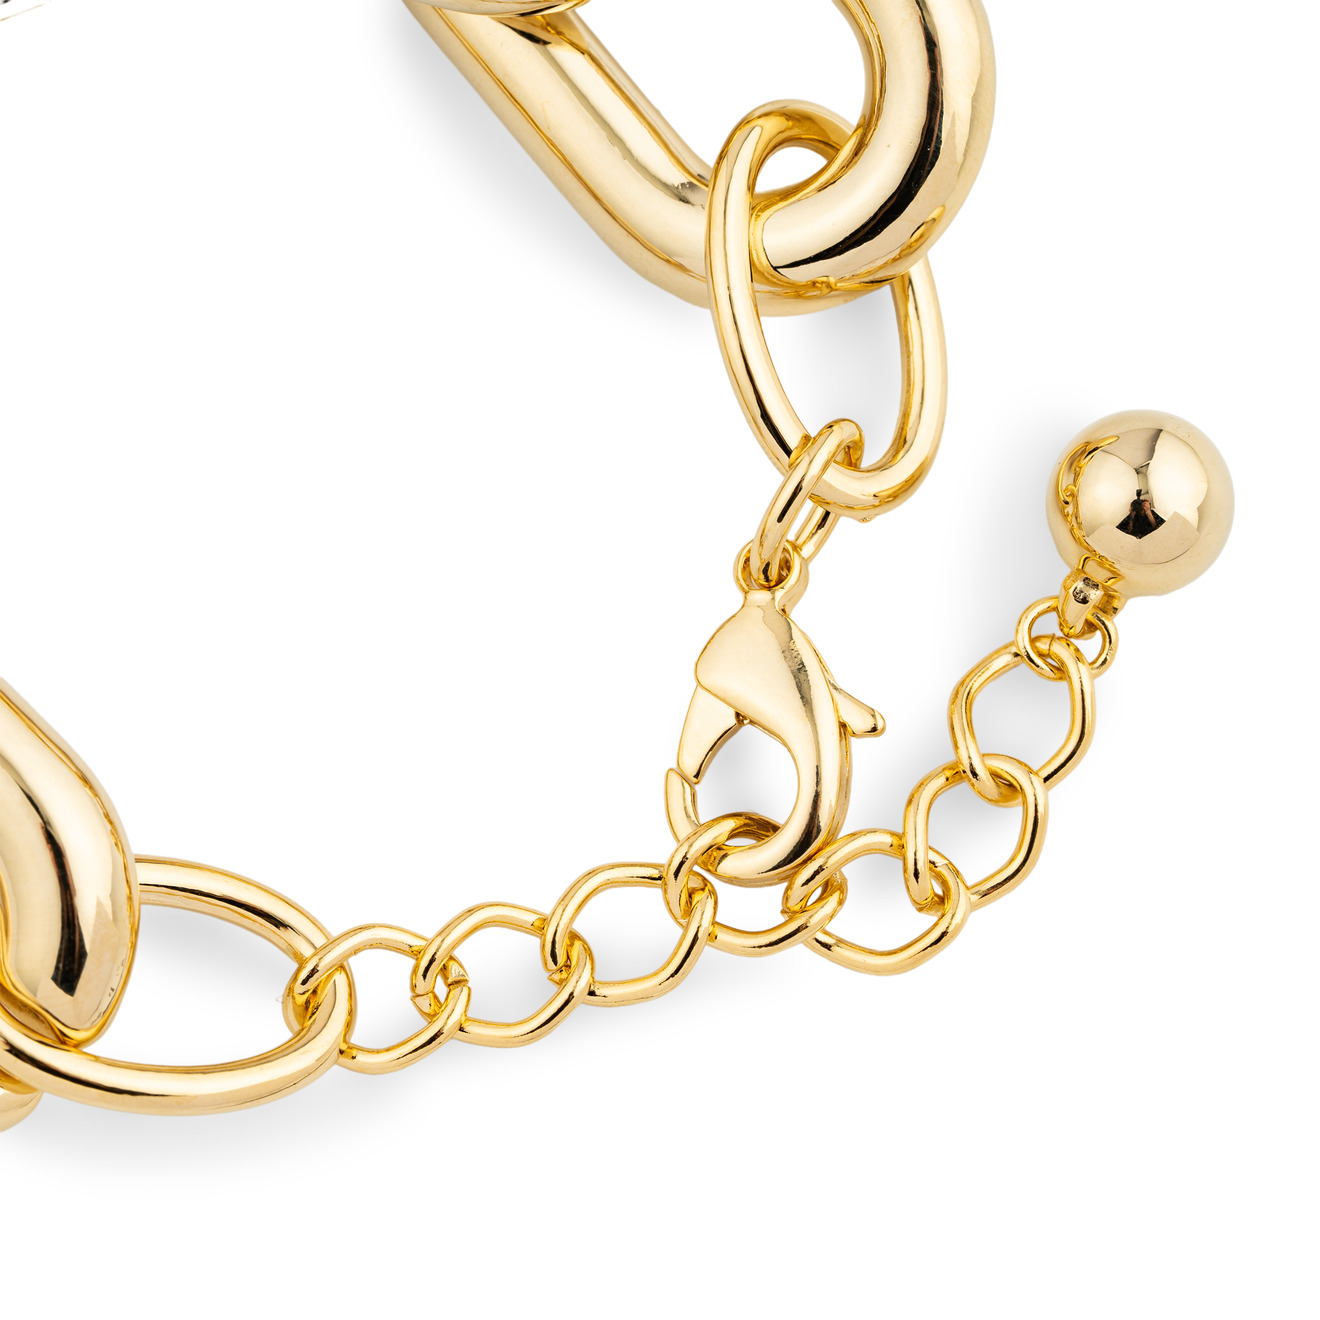 Aqua Золотистый браслет-цепь из крупных звеньев lisa smith биколорный браслет цепь из крупных звеньев